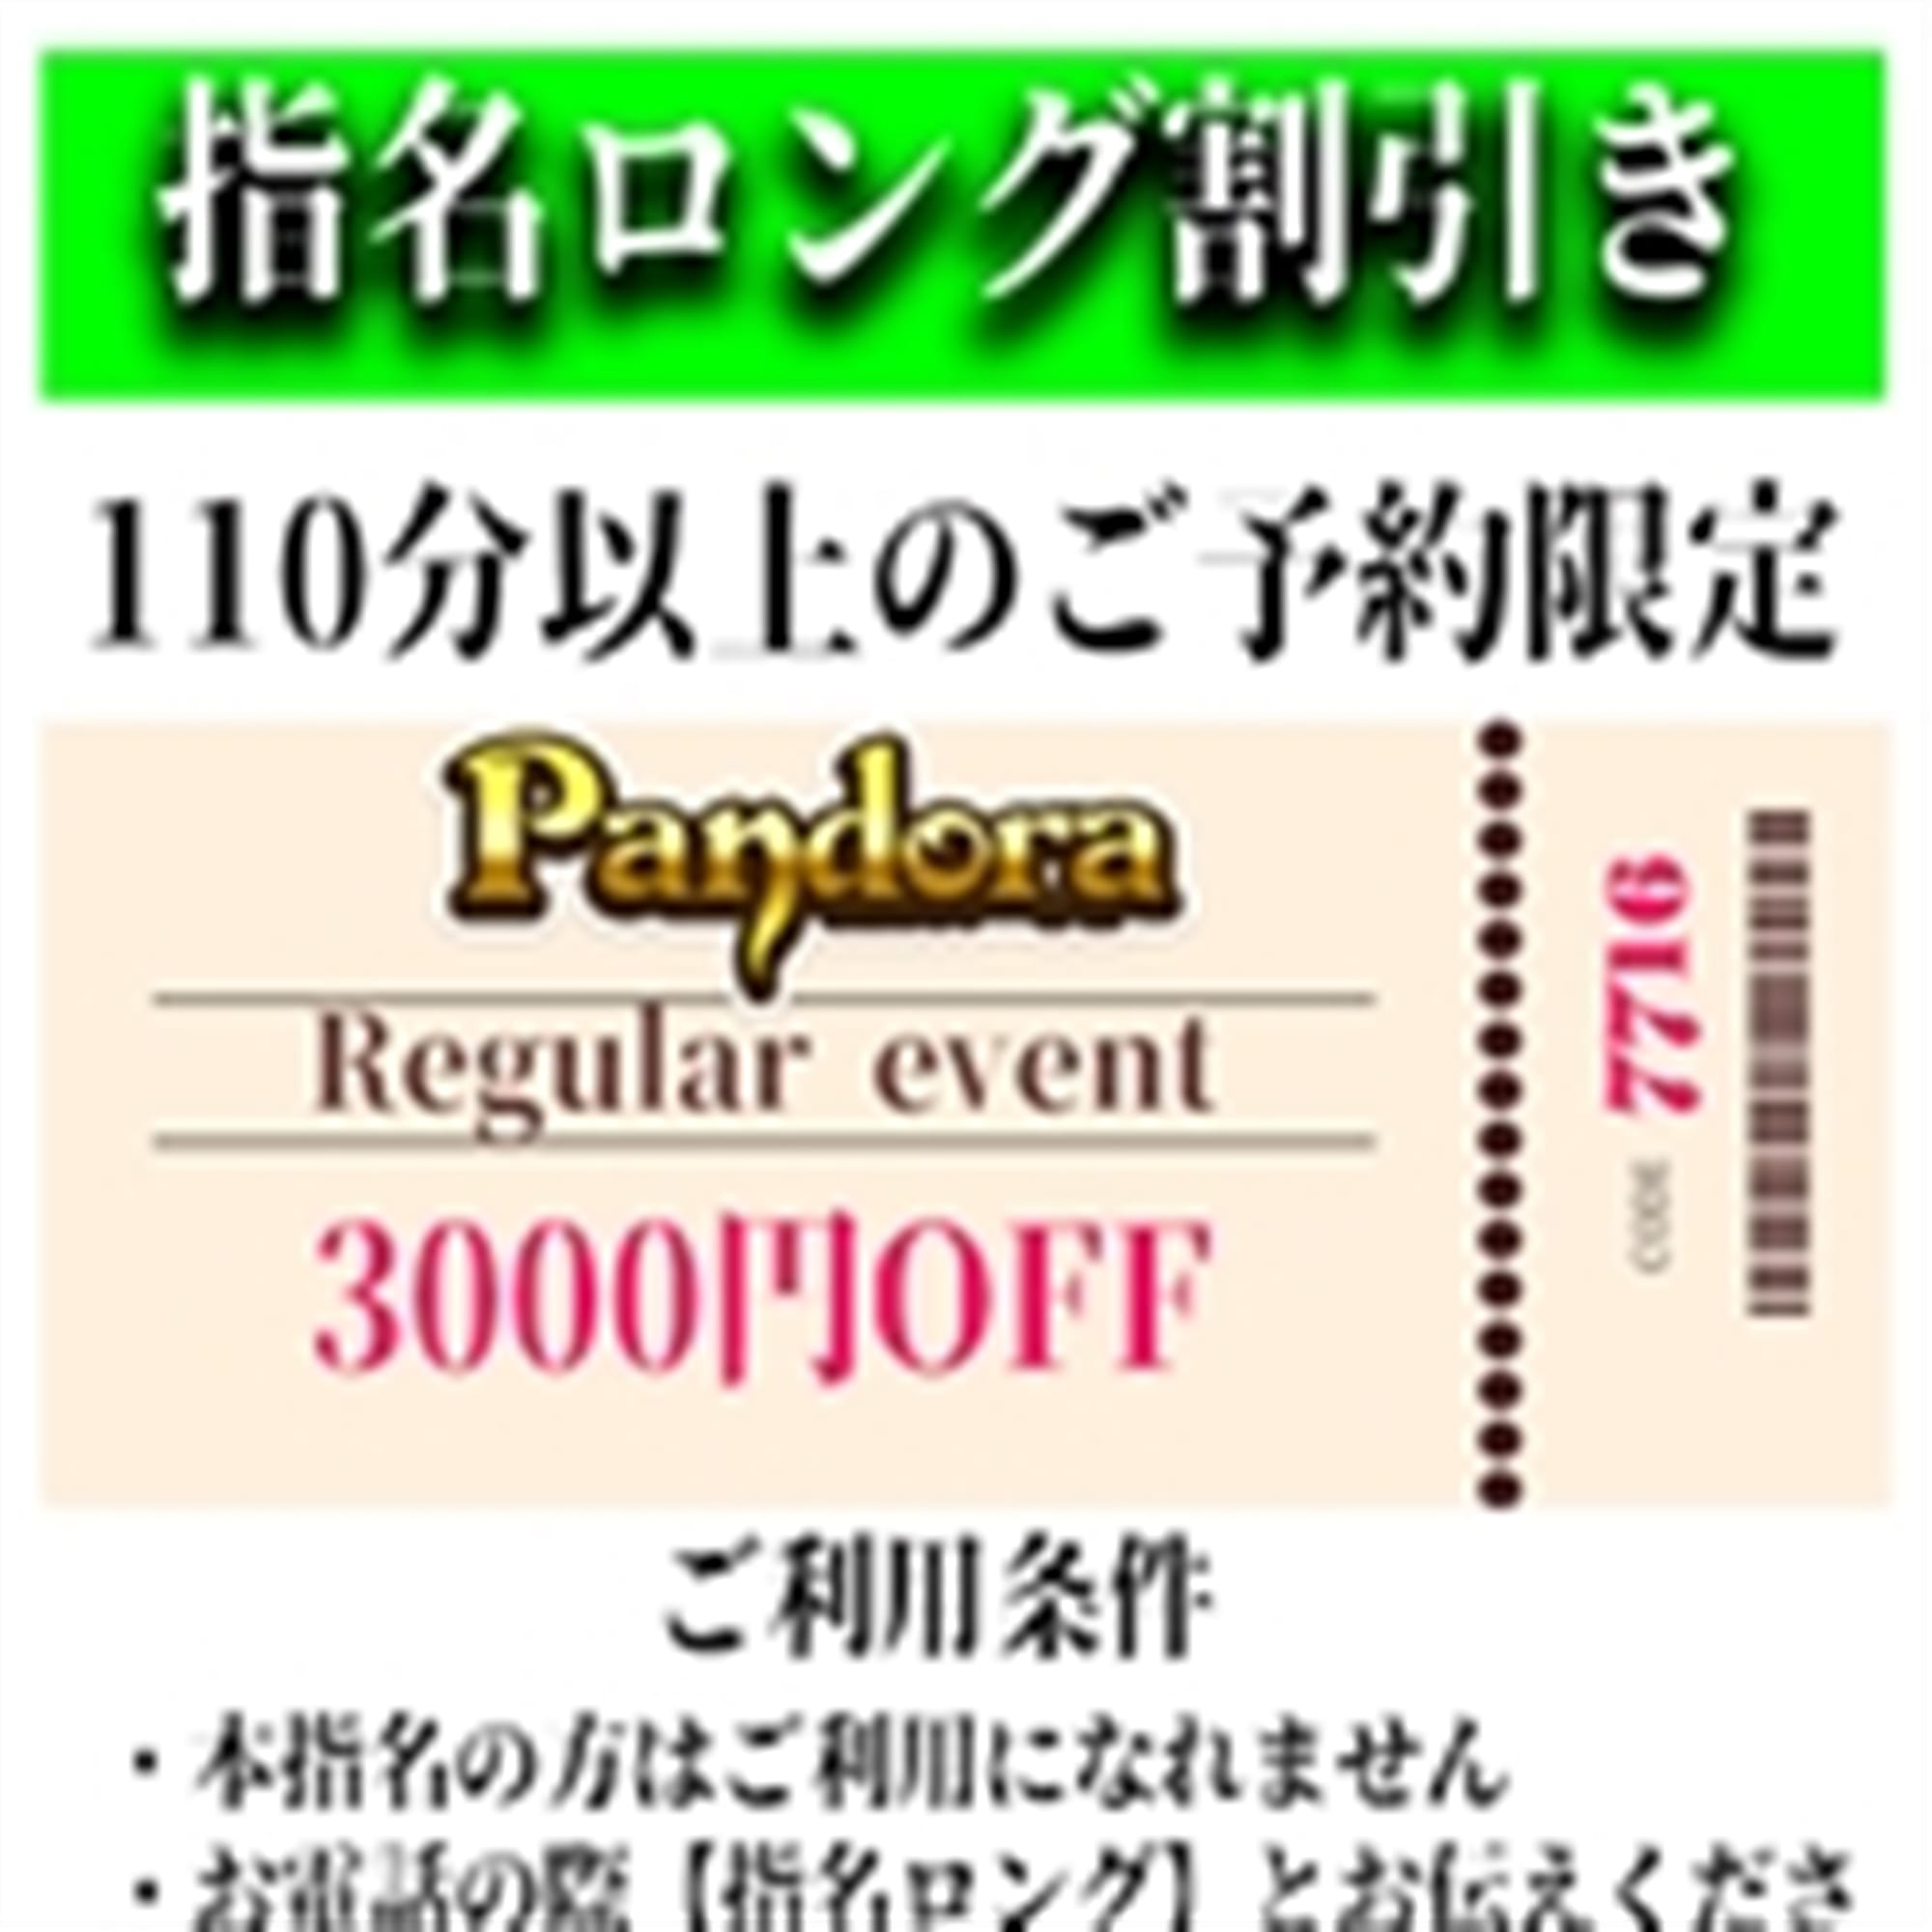 「ご指名のお客様も遊べるロングコース割引」04/27(土) 05:52 | Pandora(パンドラ)新潟のお得なニュース